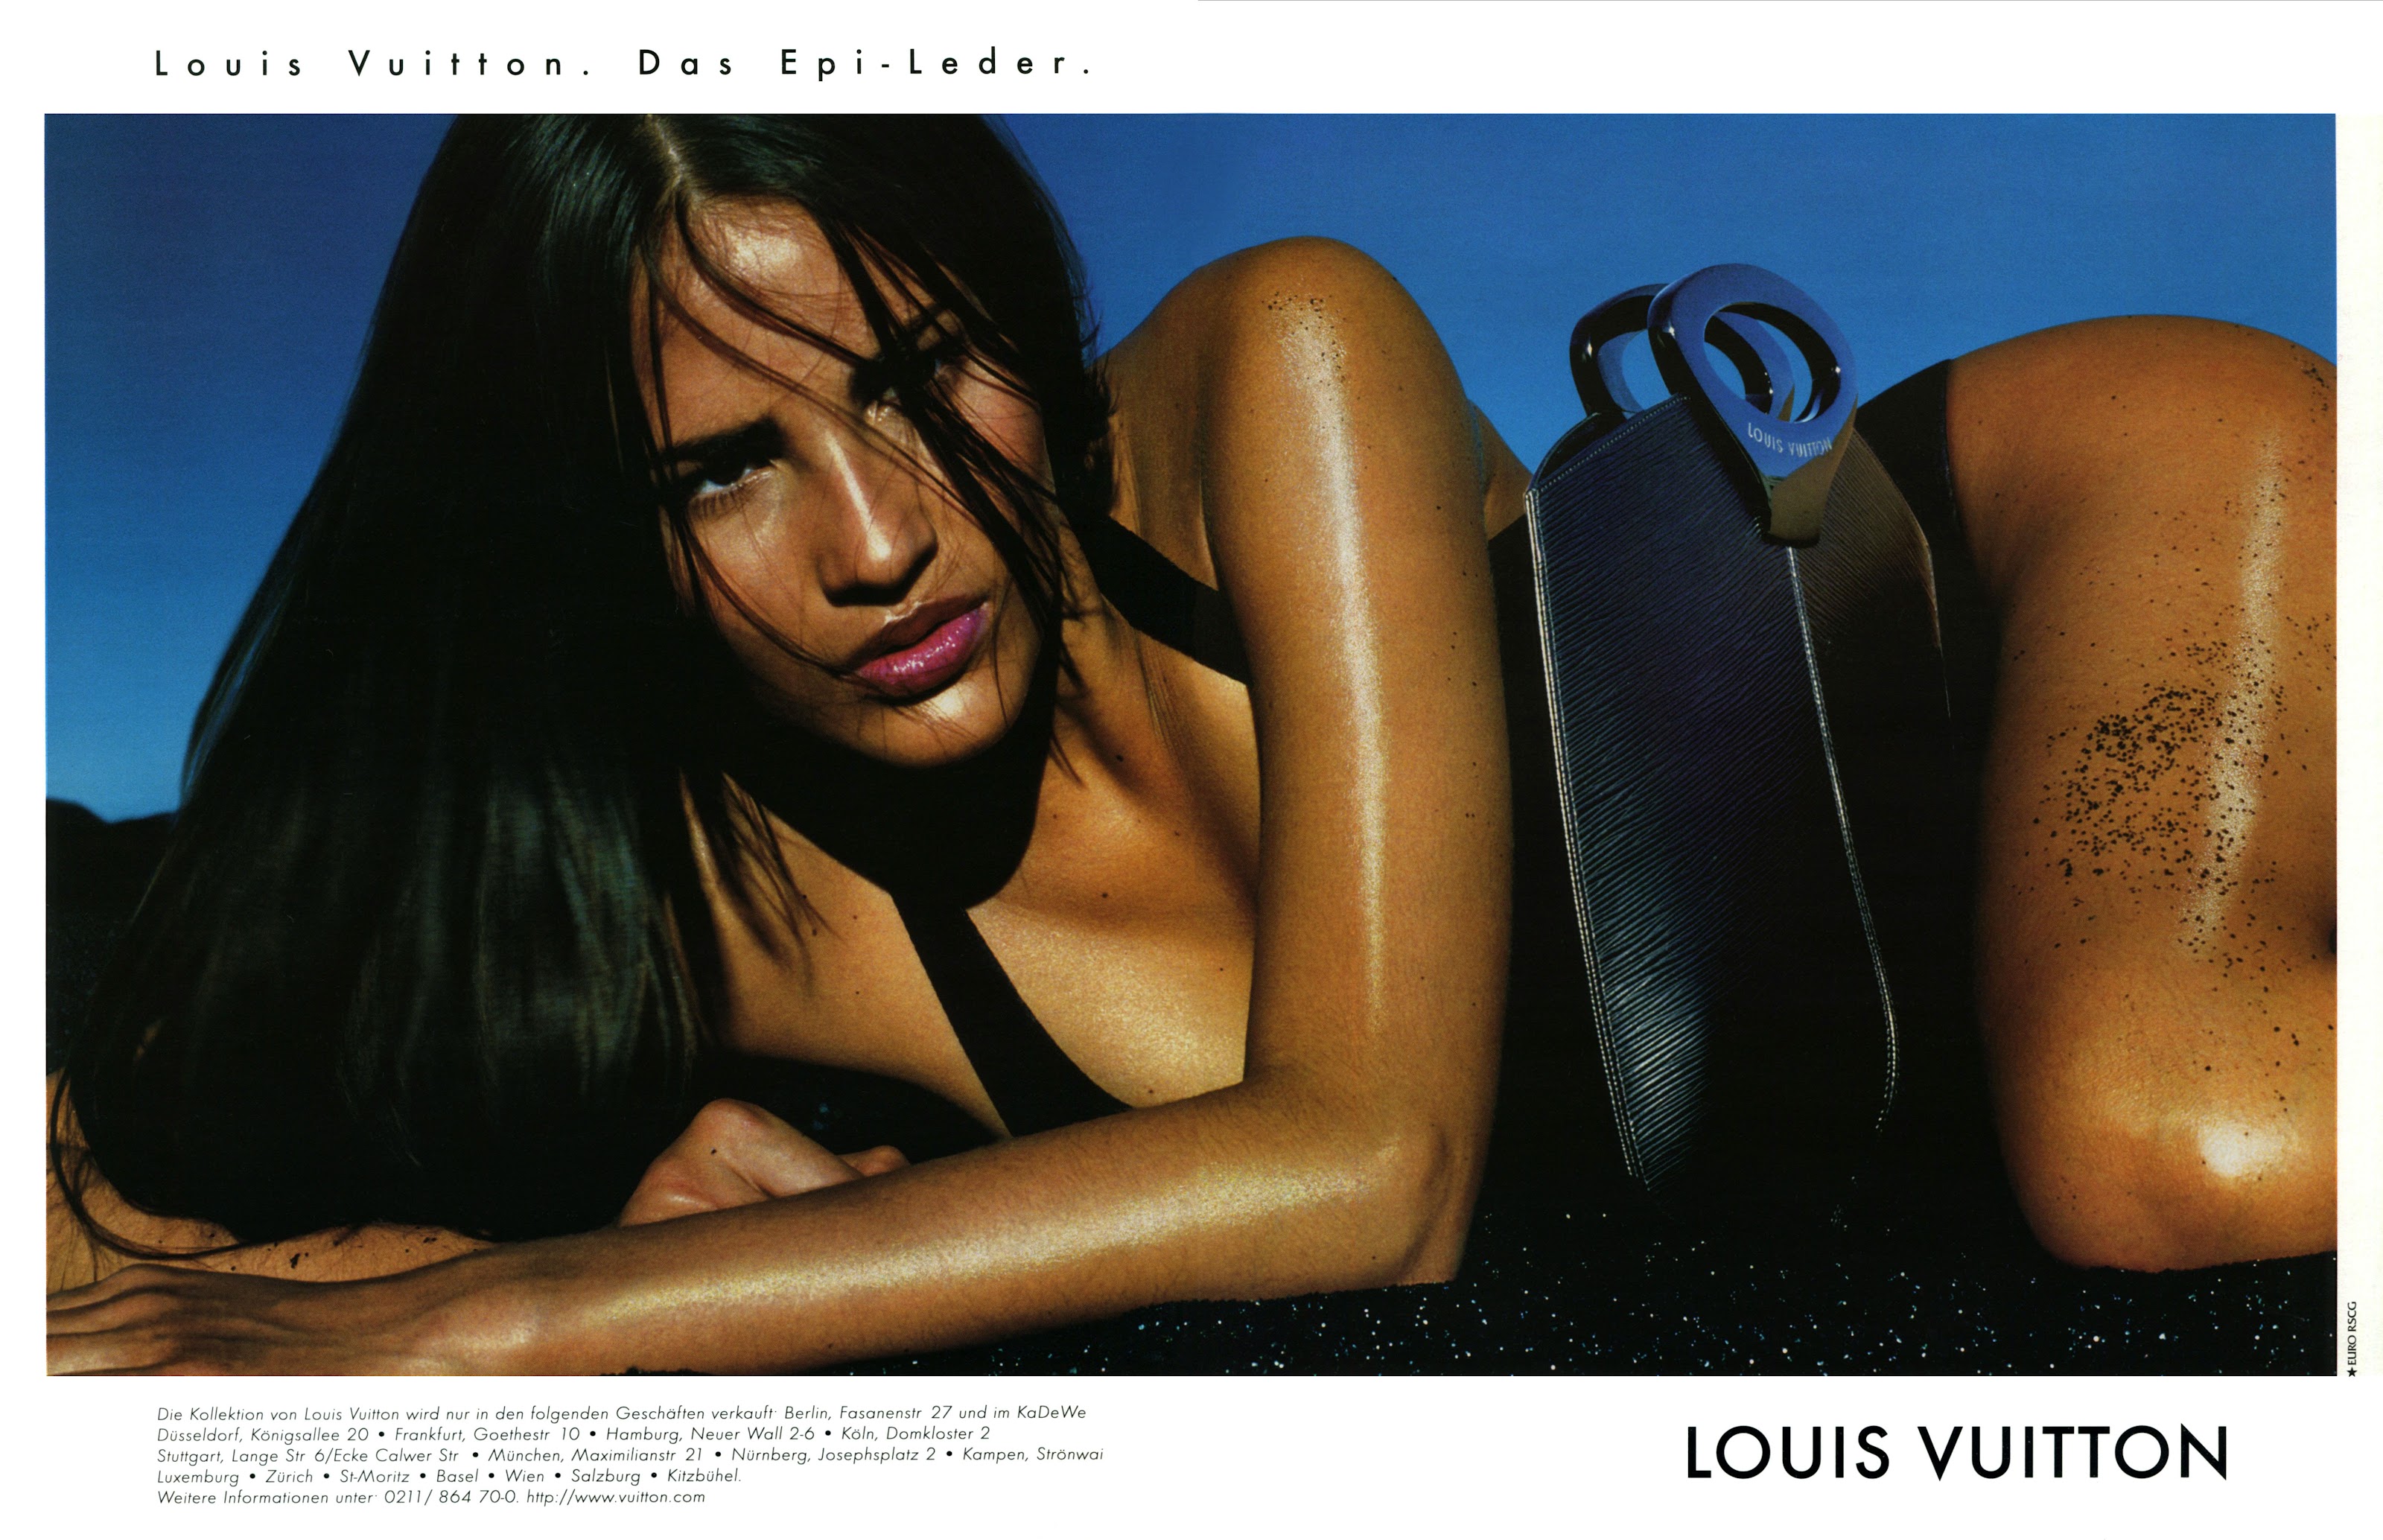 1997 - Marc Jacobs 4 Louis Vuitton show - Trish Goff & Caroline